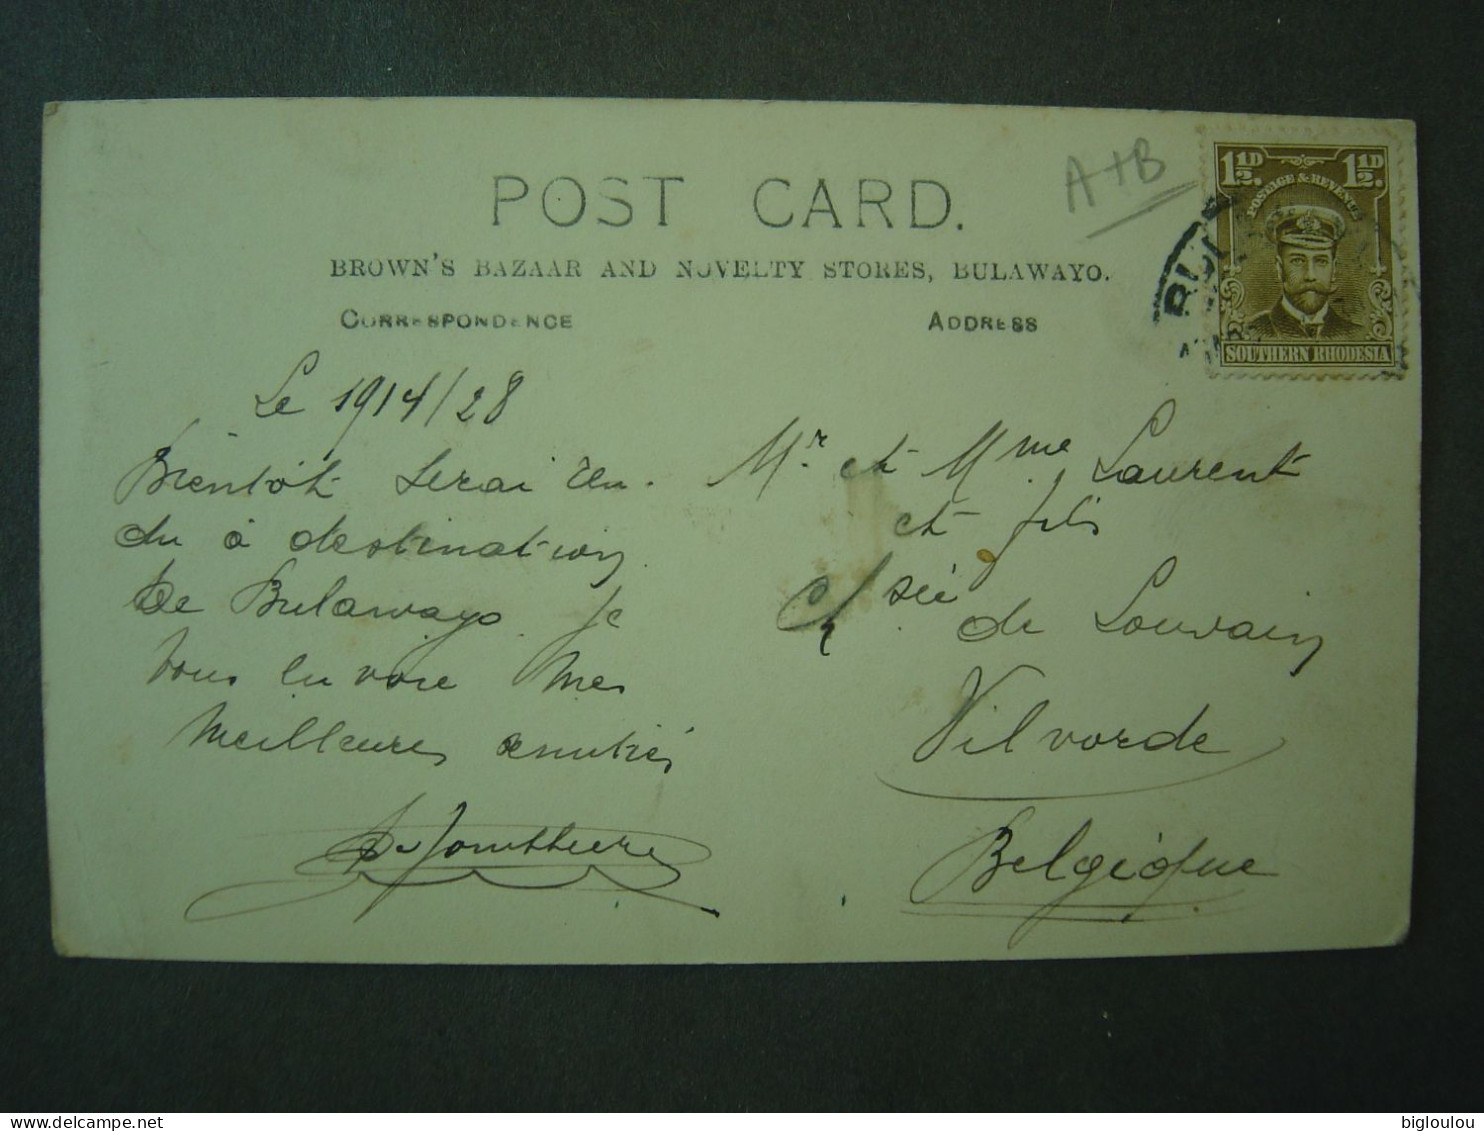 Zimbabwe - Bulawayo - Rhodes Staute - See Post Stamp - Vintage Postcard - Zimbabwe